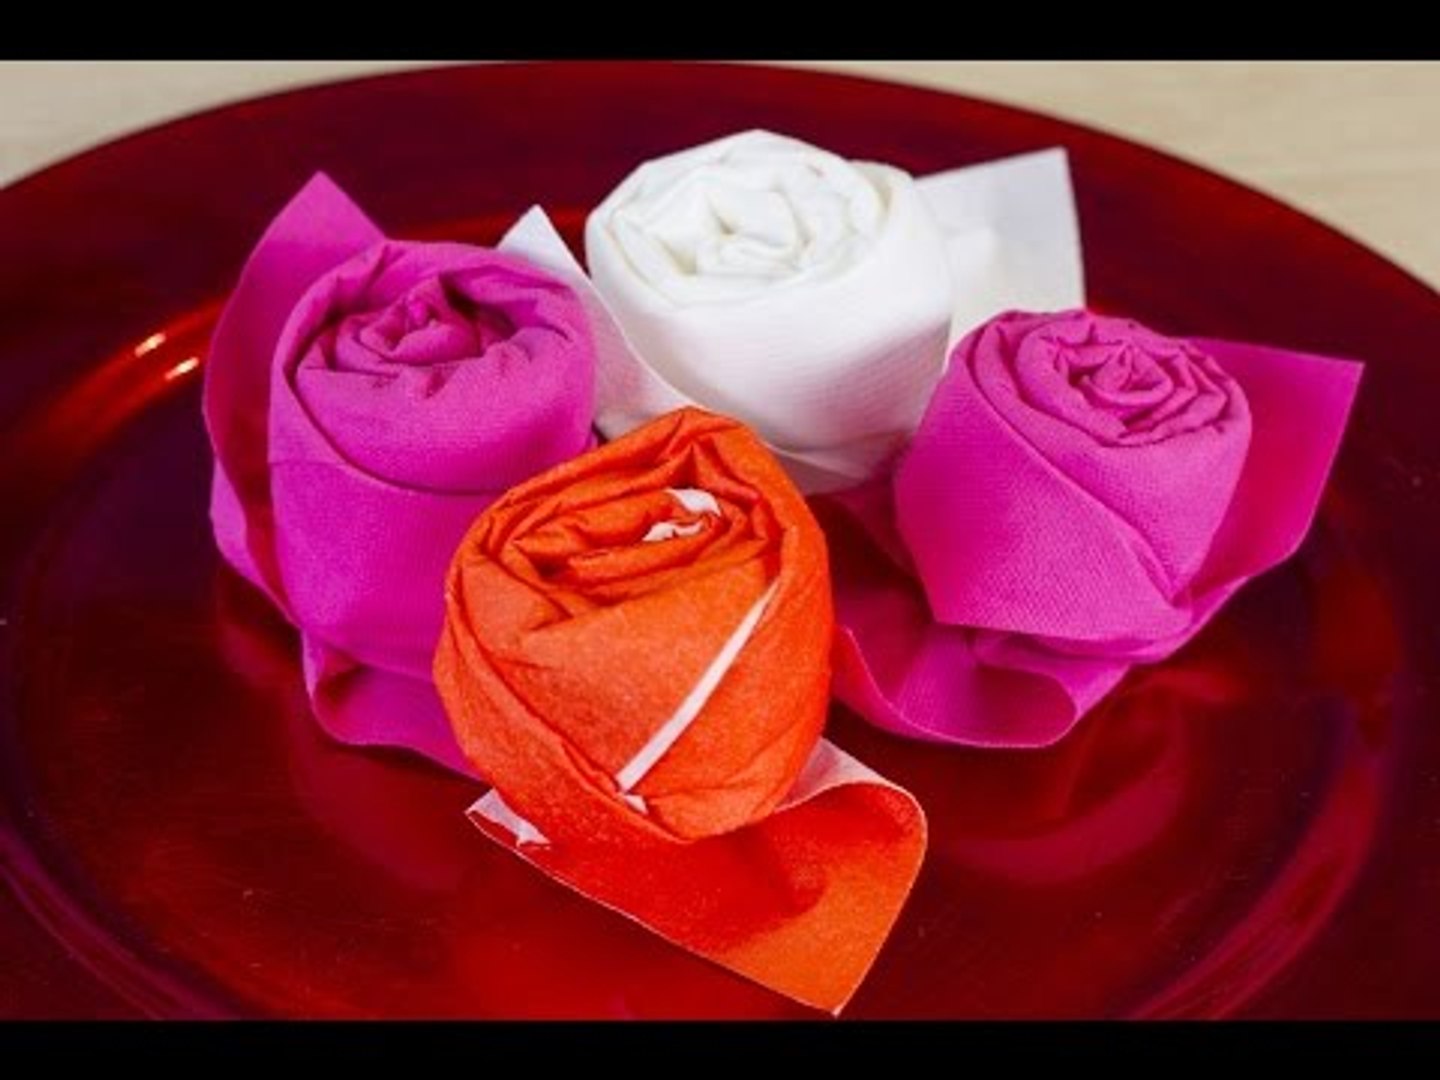 Comment faire une rose avec une serviette en papier ? - Vidéo Dailymotion